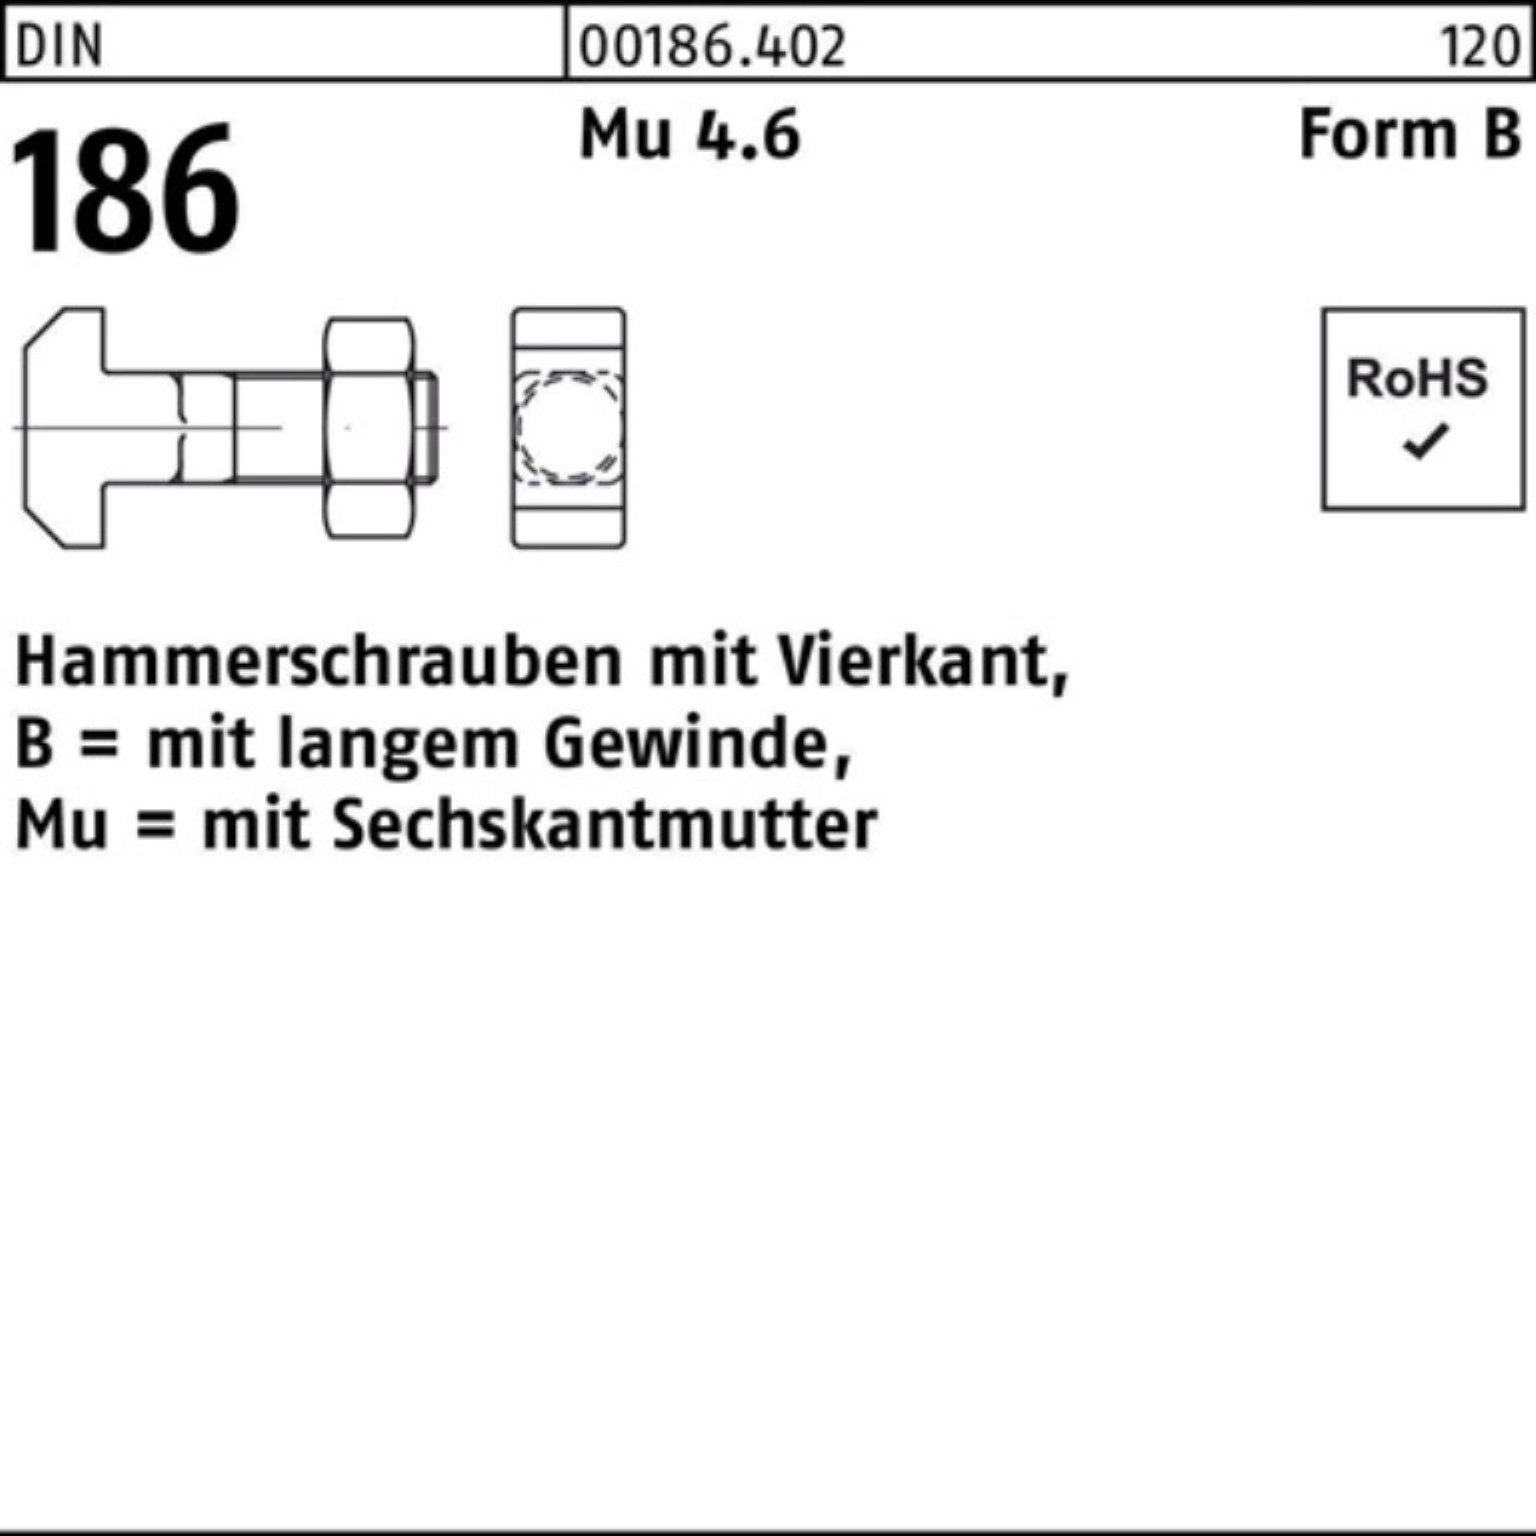 Reyher Schraube 100er BM 30 Vierkant 186 8x DIN M 6-ktmutter Hammerschraube FormB Pack